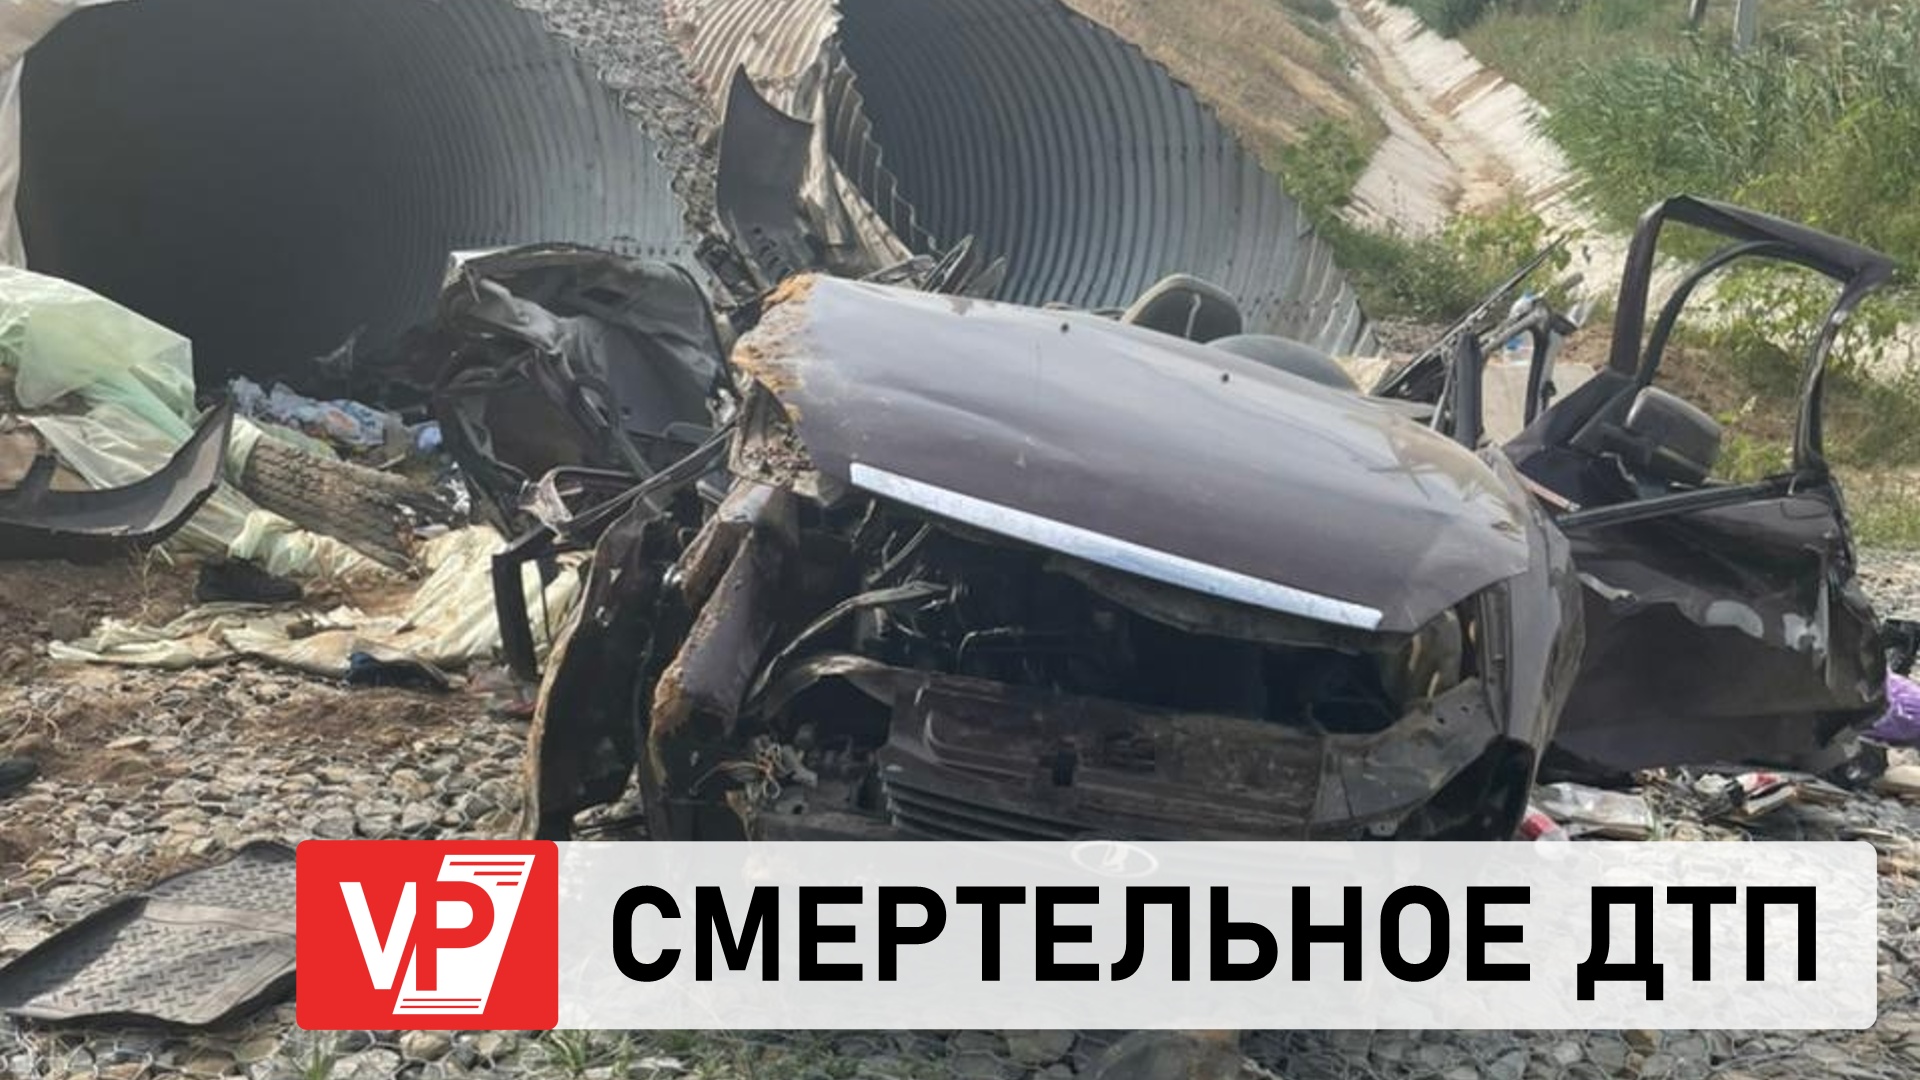 2015 год происшествия. ДТП на Волгоградской трассе. Автомобильная катастрофа.